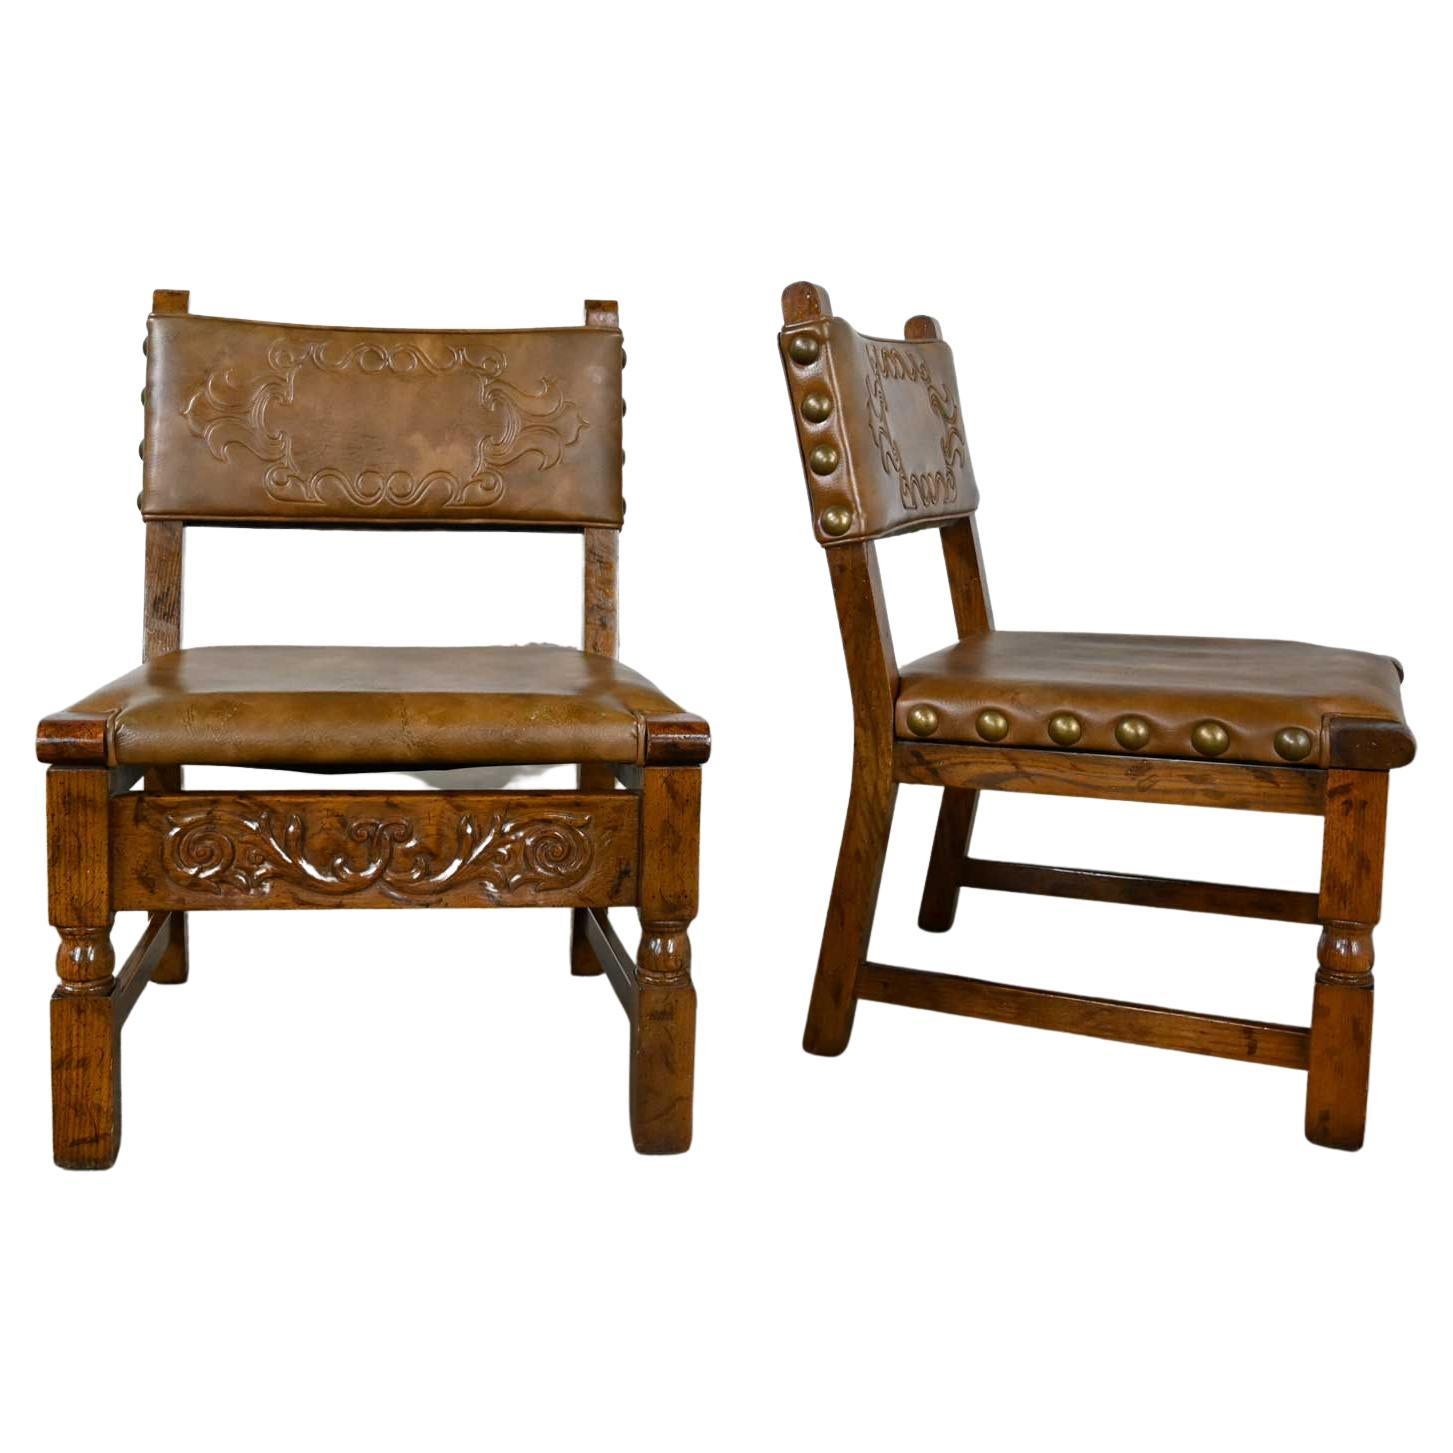 Paire de chaises vintage de style néo-espagnol en chêne avec assise en faux cuir cognac ouvragé